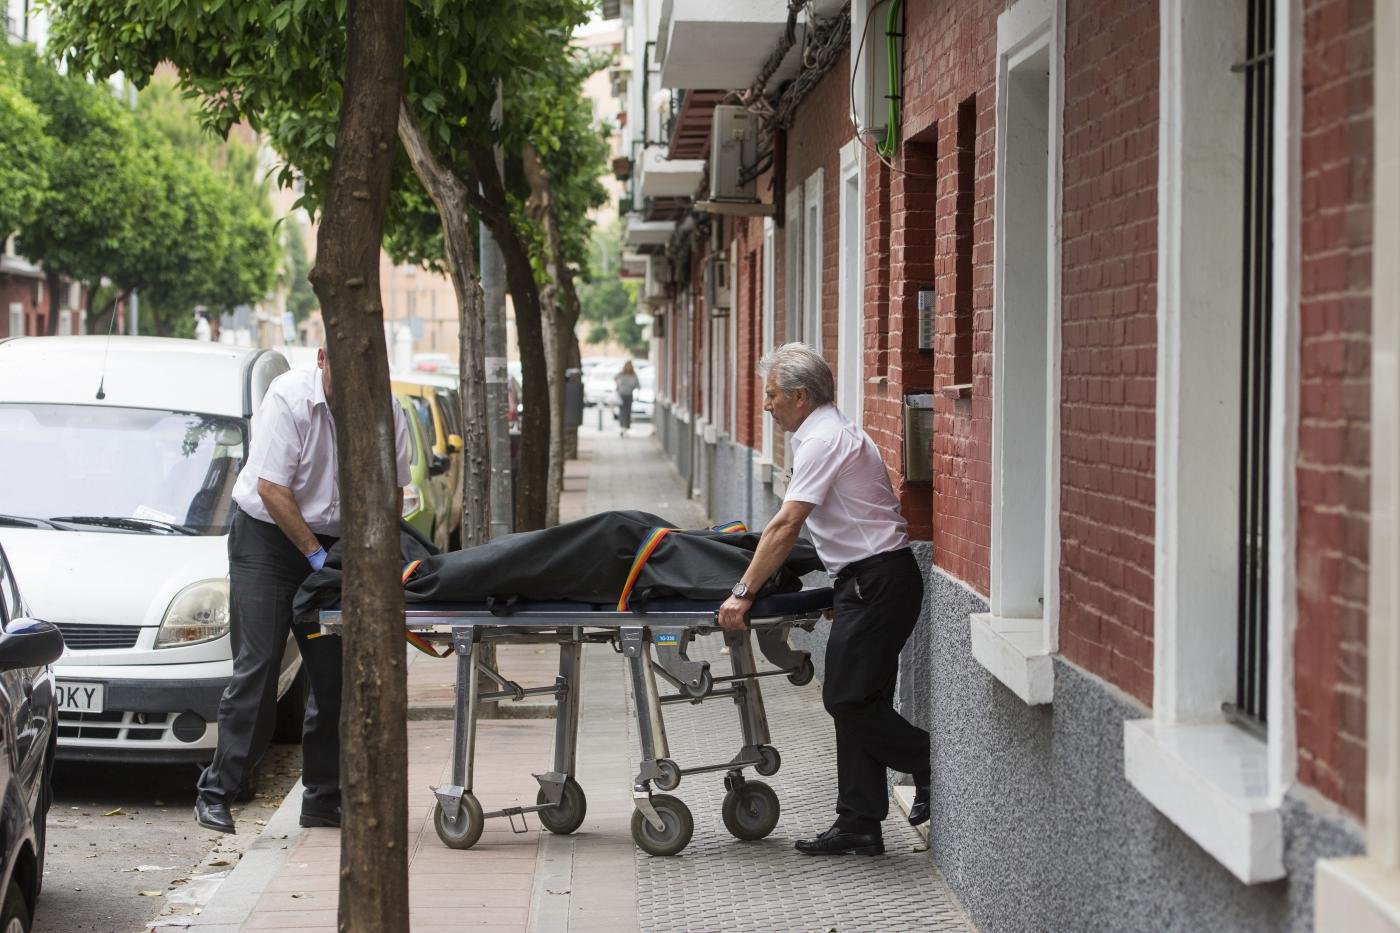 Hallan el cadáver de una mujer con un cuchillo clavado en el pecho · Sevilla · Andalucía Información